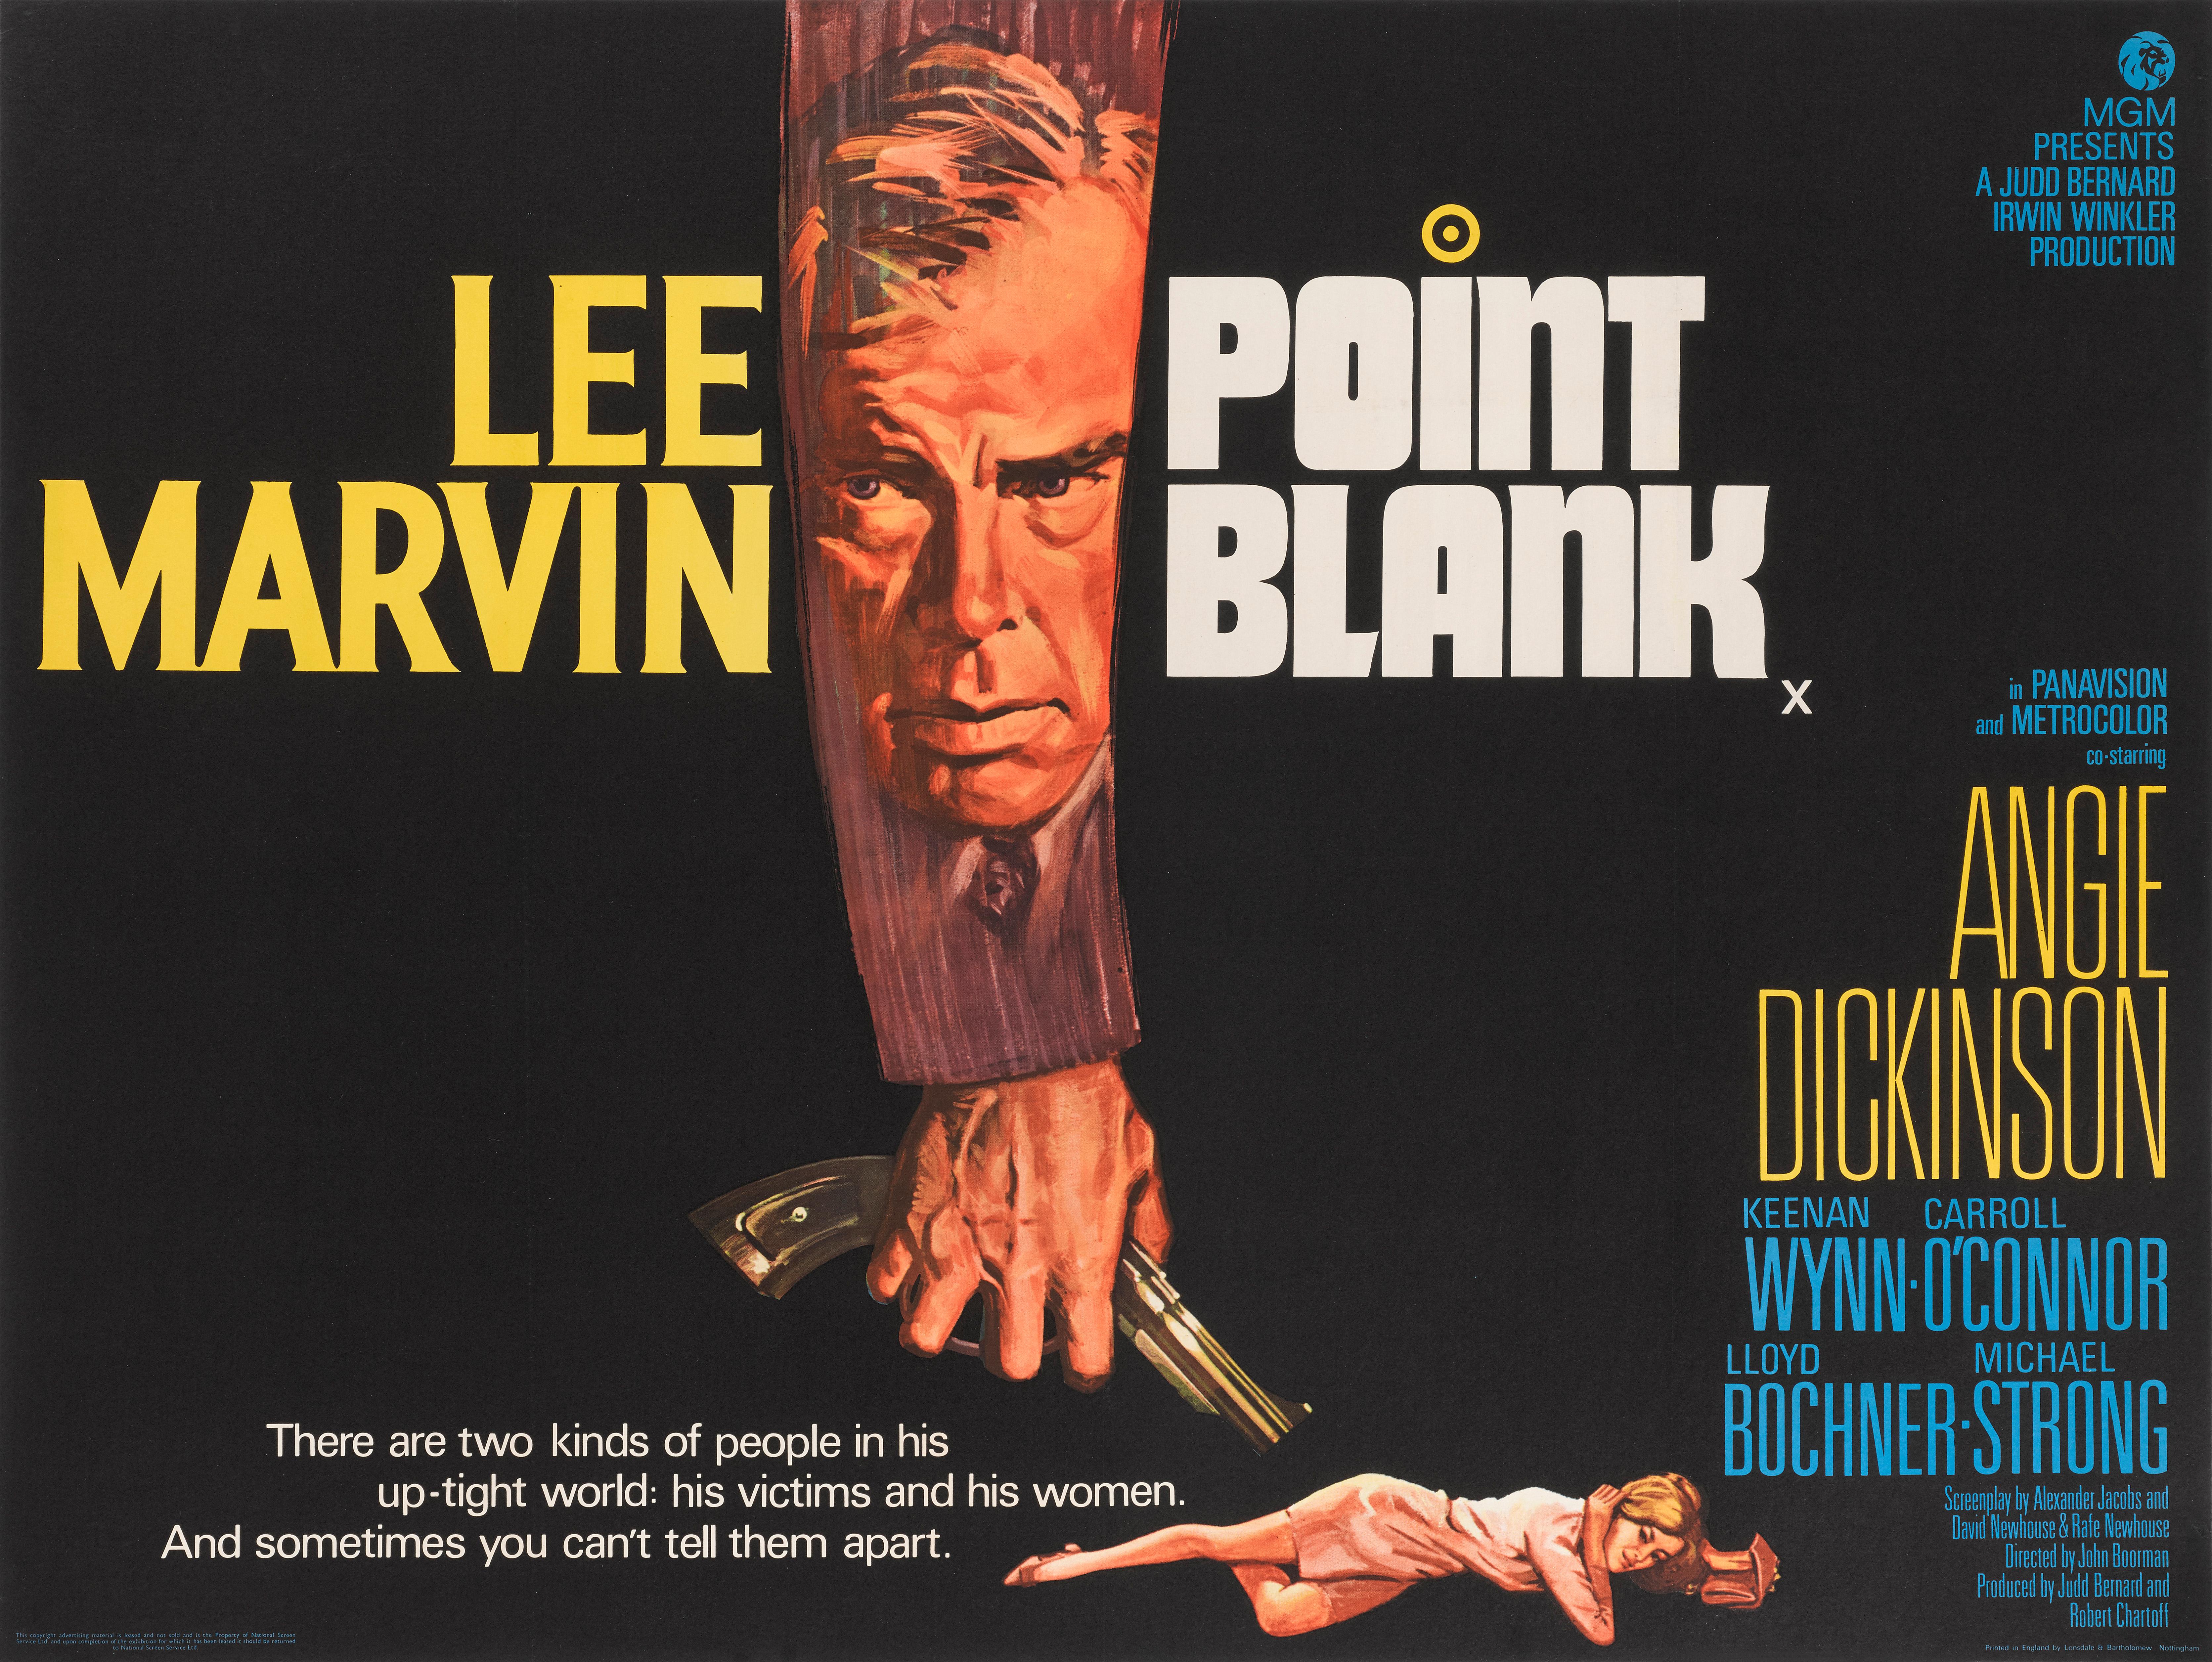 Affiche originale britannique pour le film Point Blank (1967). Le film a été réalisé par John Boorman à la demande de Lee Marvin, et met en scène Marvin, Angie Dickinson et Keenan Wynn. Ce film n'a pas été un succès au box-office au moment de sa